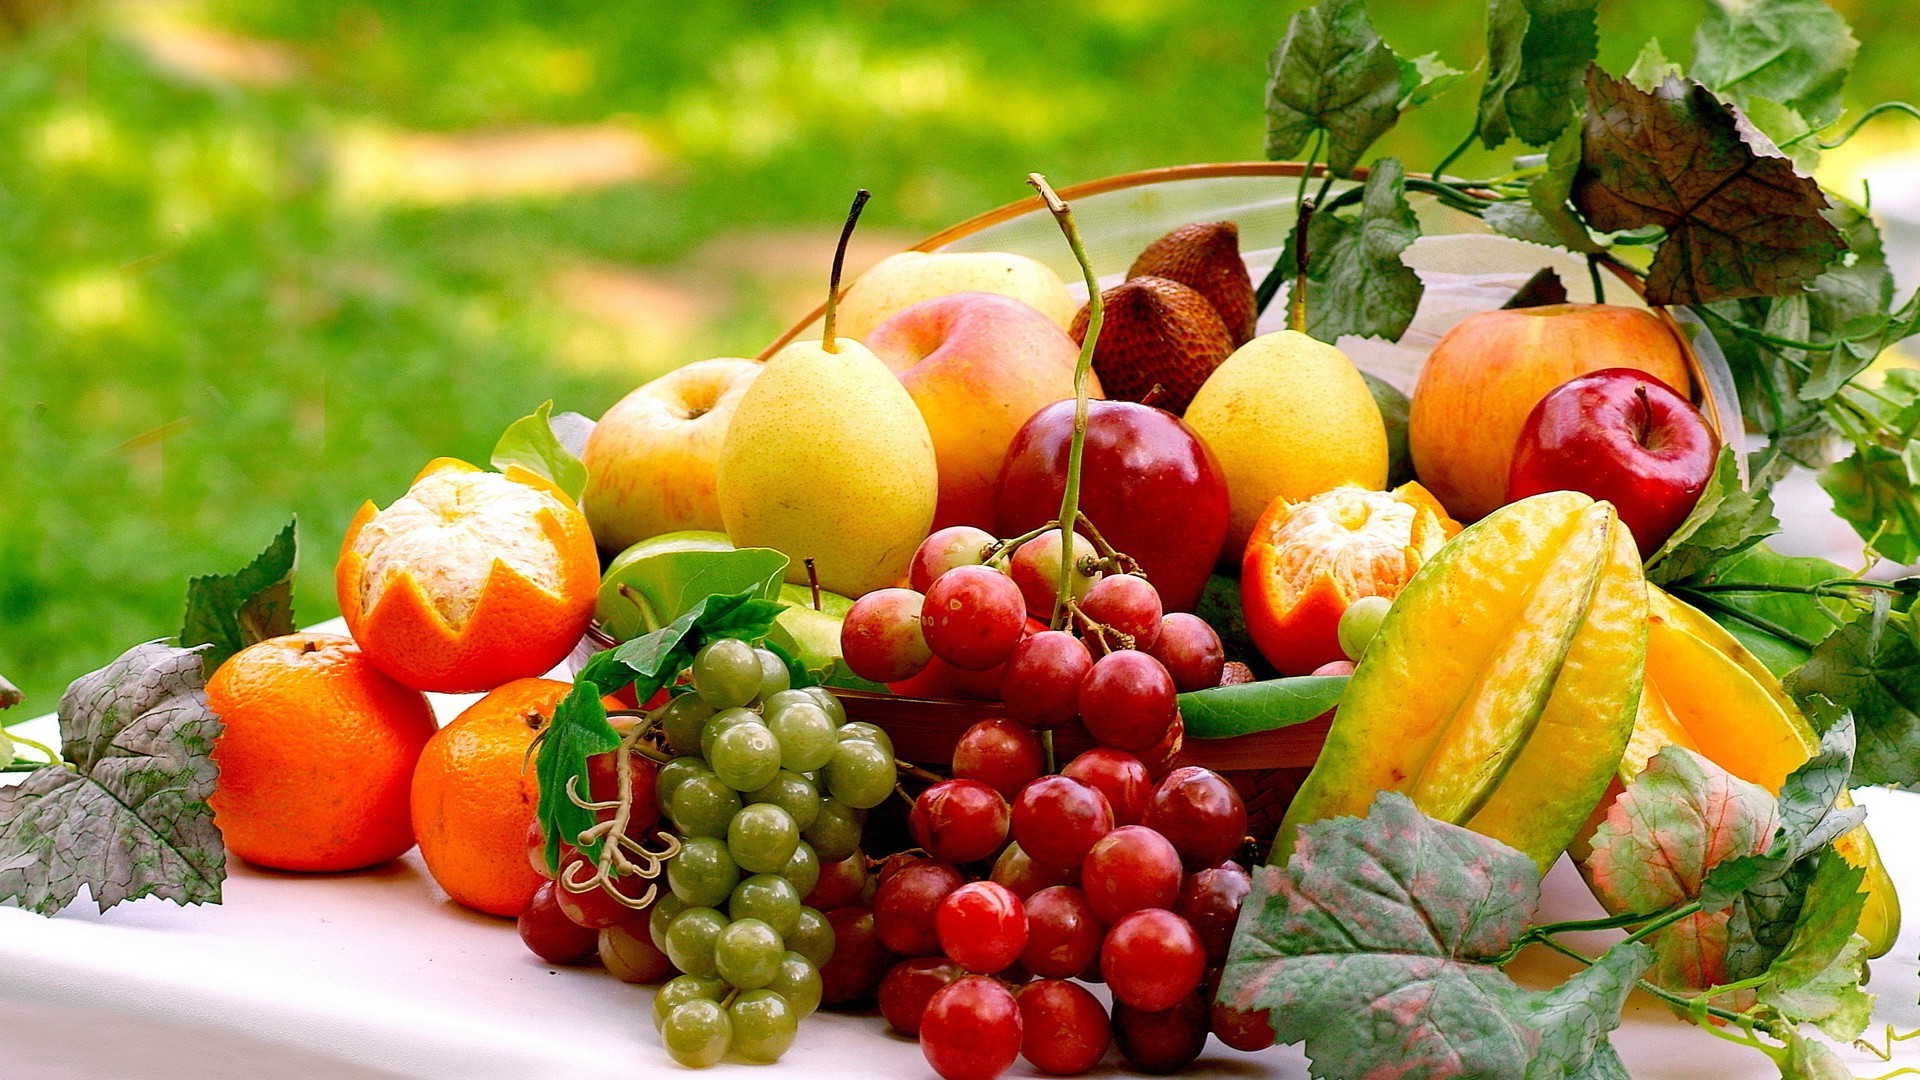 ernährungstapete,natürliche lebensmittel,lokales essen,essen,obst,gemüse